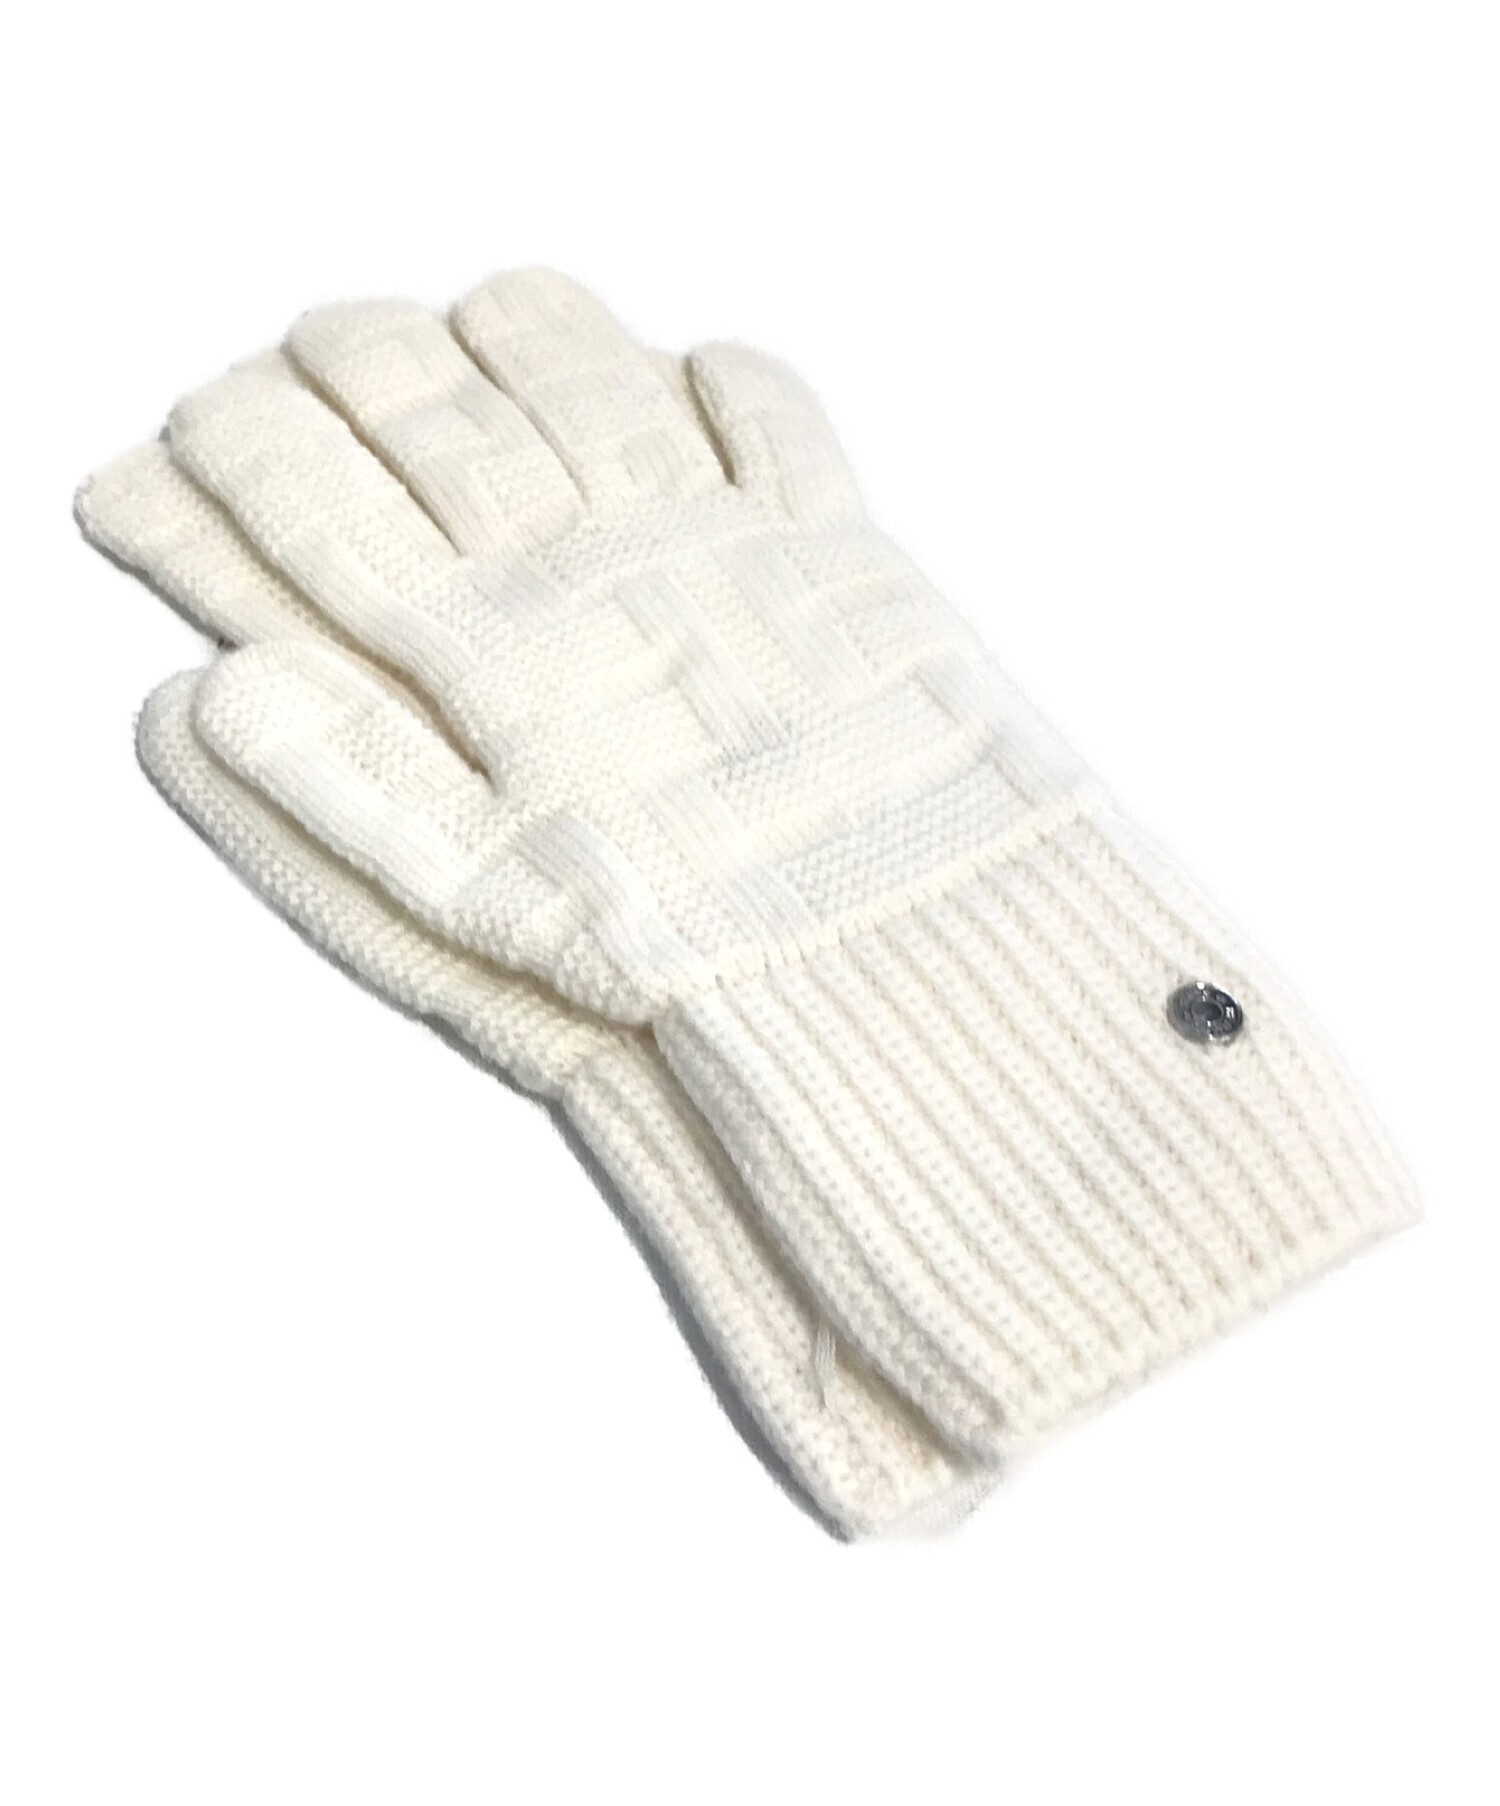 中古・古着通販】HERMES (エルメス) 手袋 ホワイト サイズ:S 未使用品 